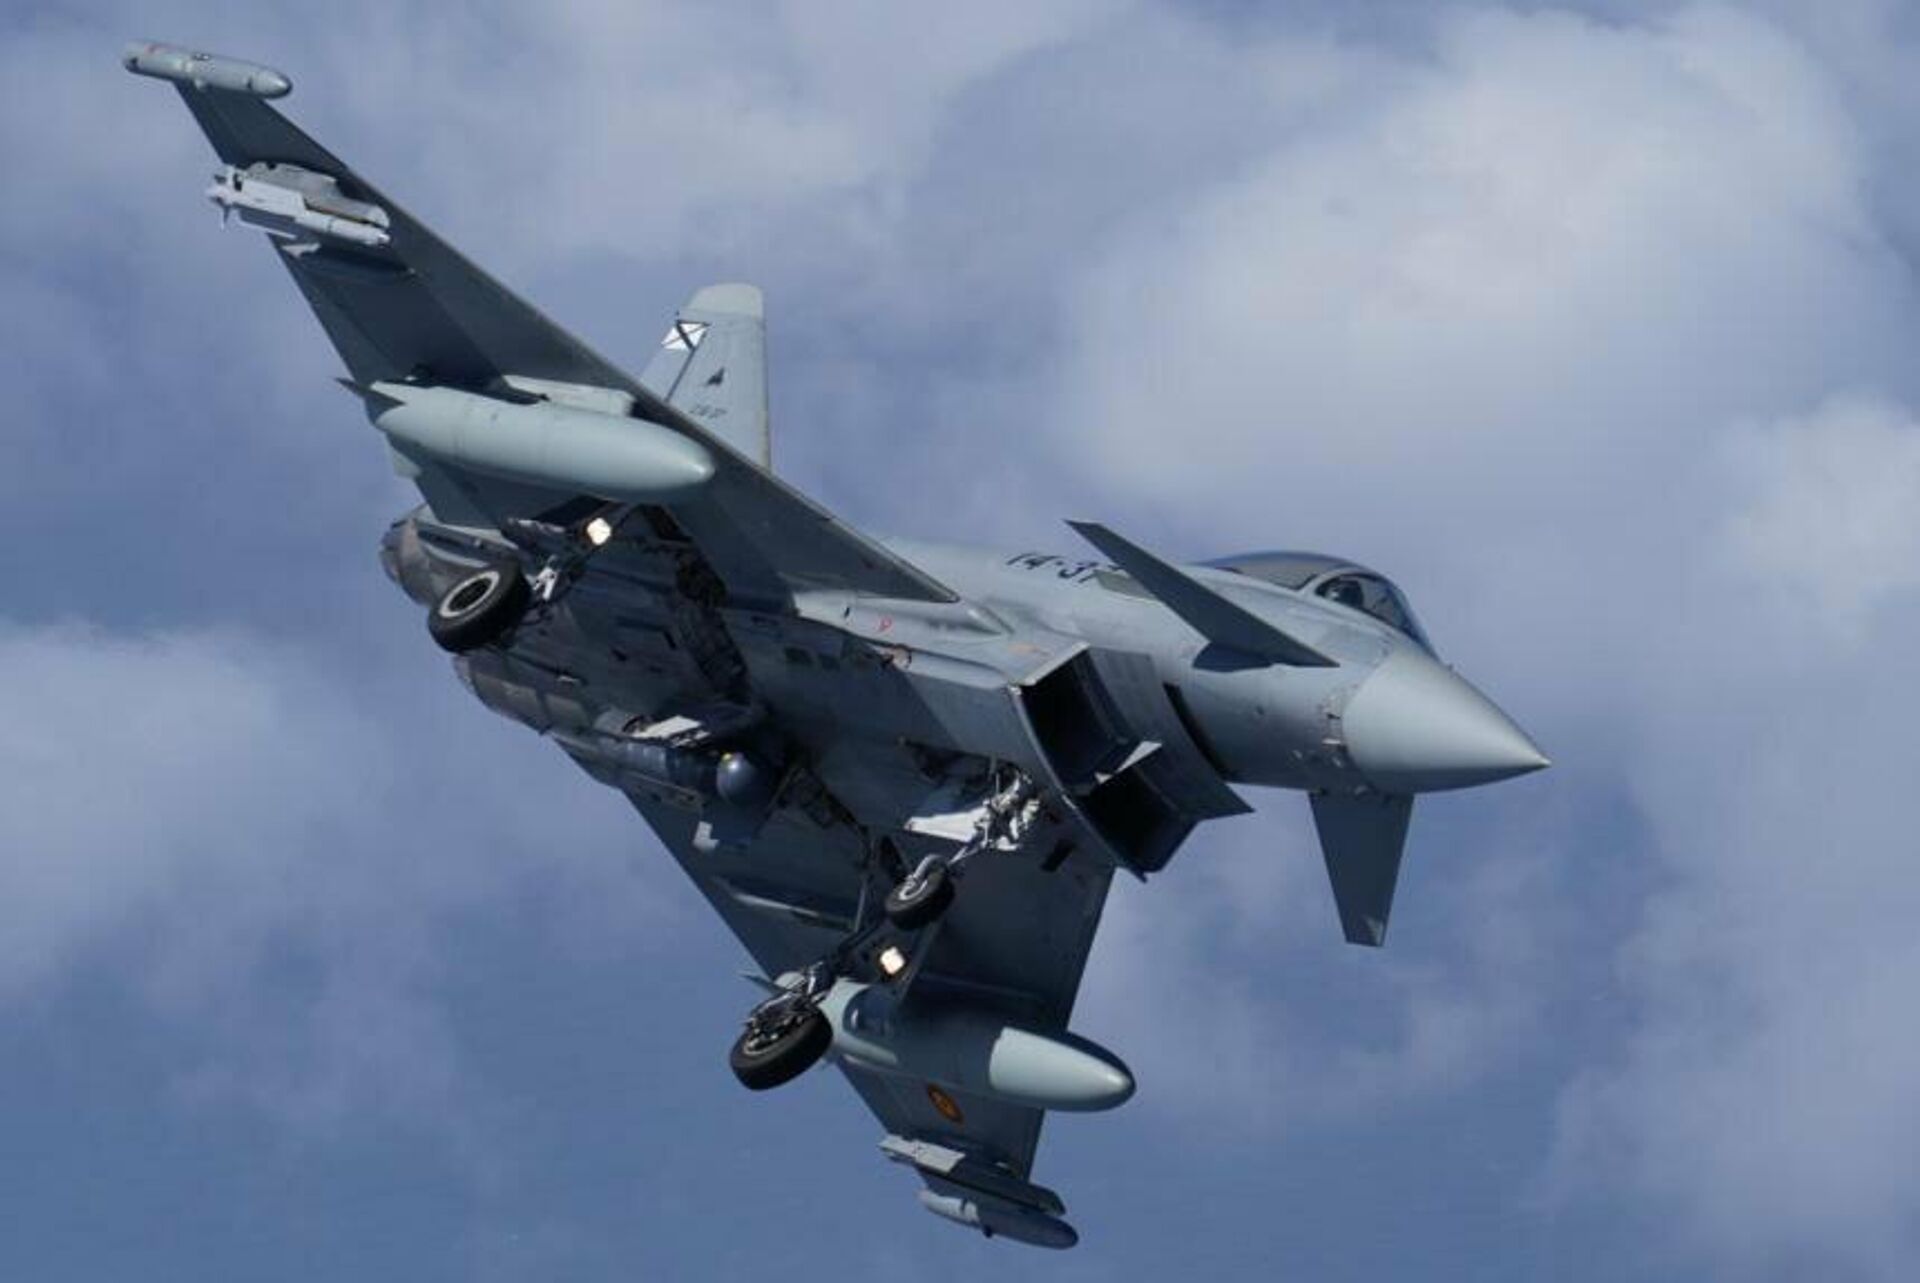 El Eurofighter ha sido probado en combate durante operaciones en Libia, Irak y Siria. - Sputnik Mundo, 1920, 27.10.2021